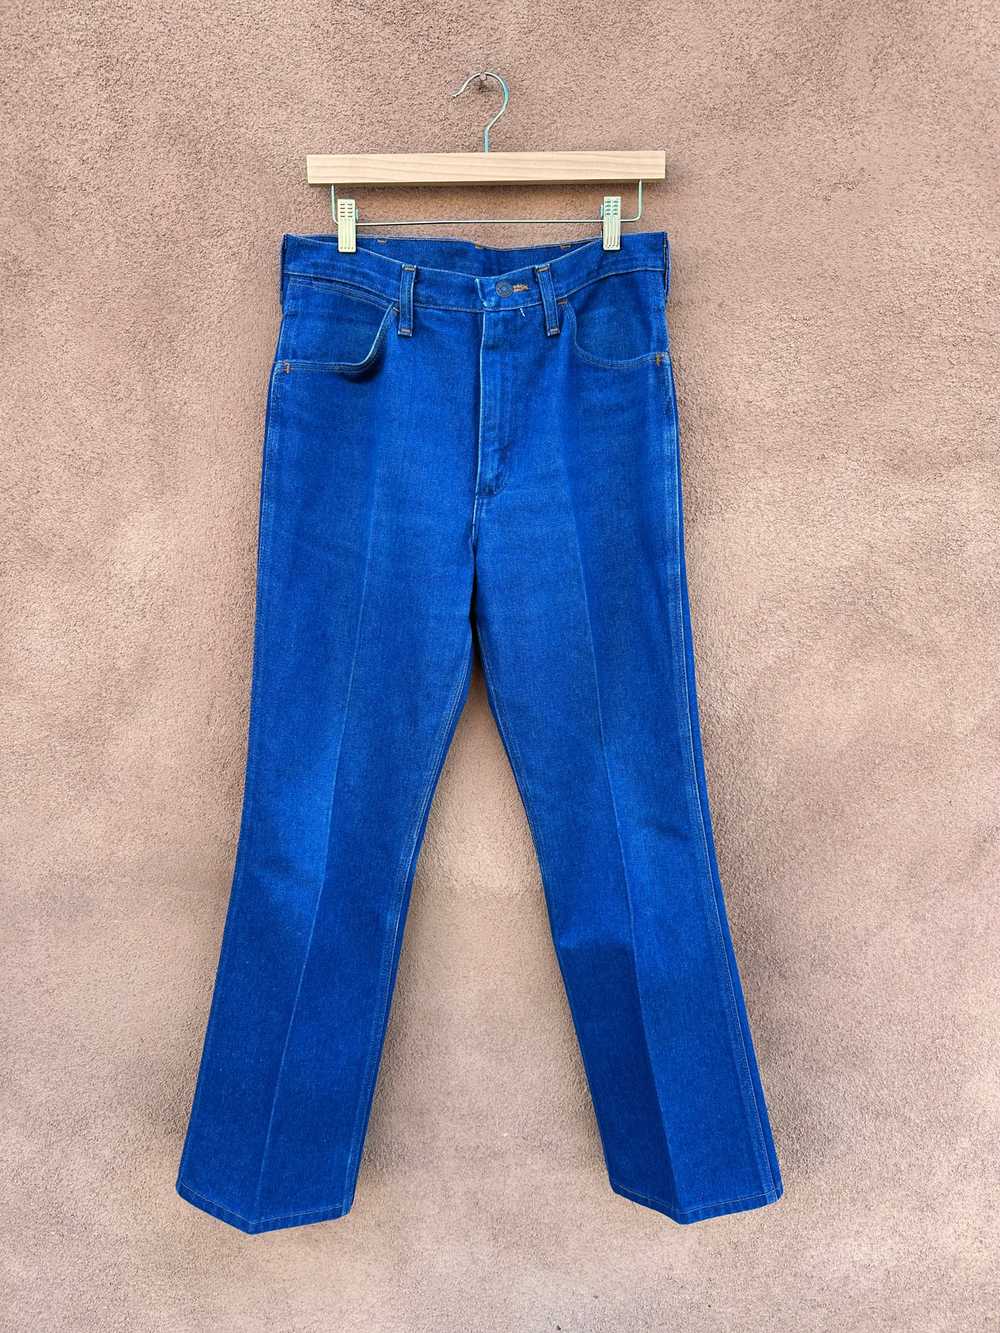 1970's Wrangler Straight Leg Jeans - 33 - Made in… - image 1